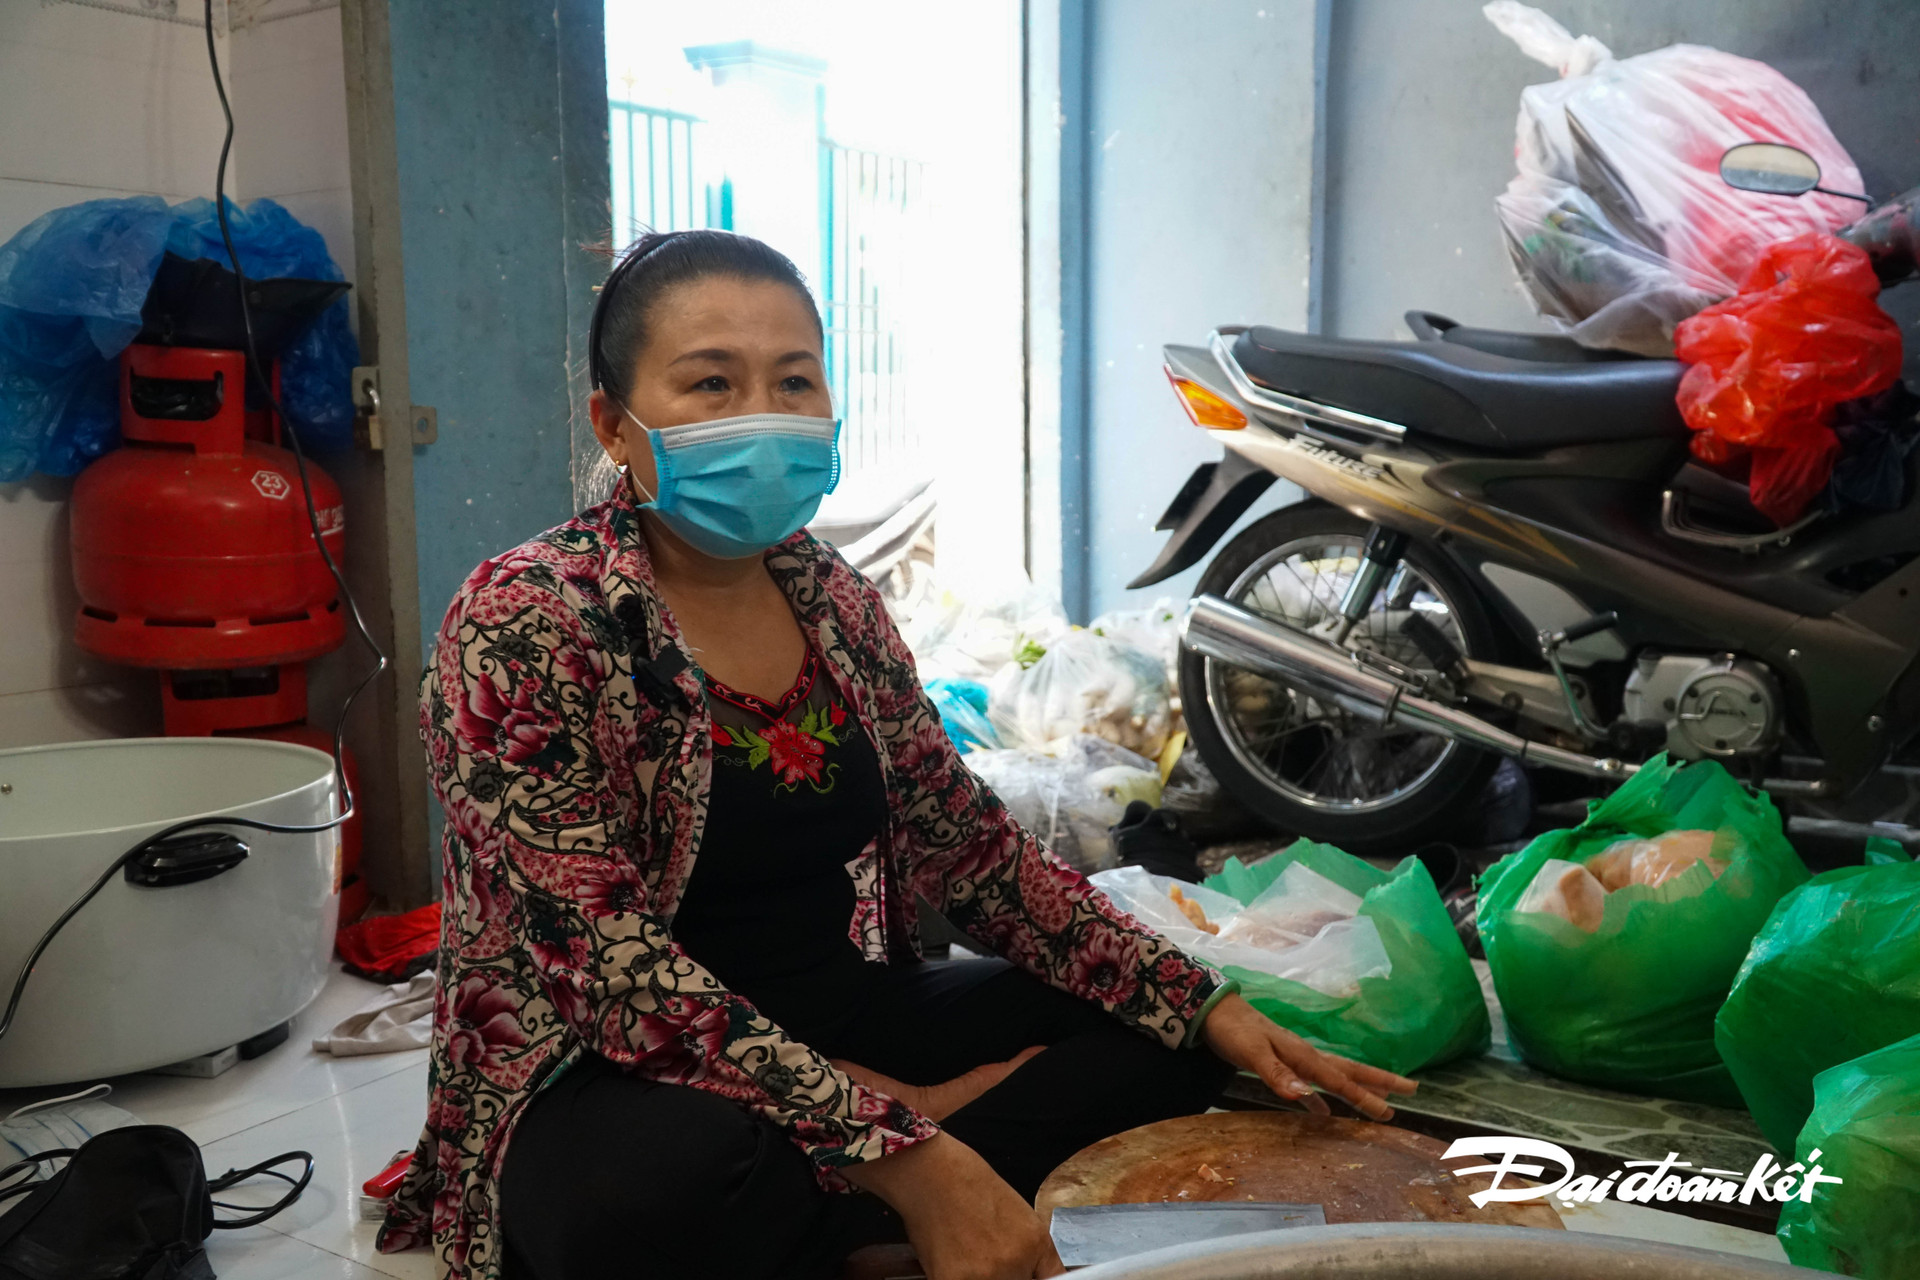 Chị Nguyễn Thị Tưởng, 53 tuổi, ngụ Quận 5, chị đã gắng với công việc thiện nguyện nhiều năm nay.